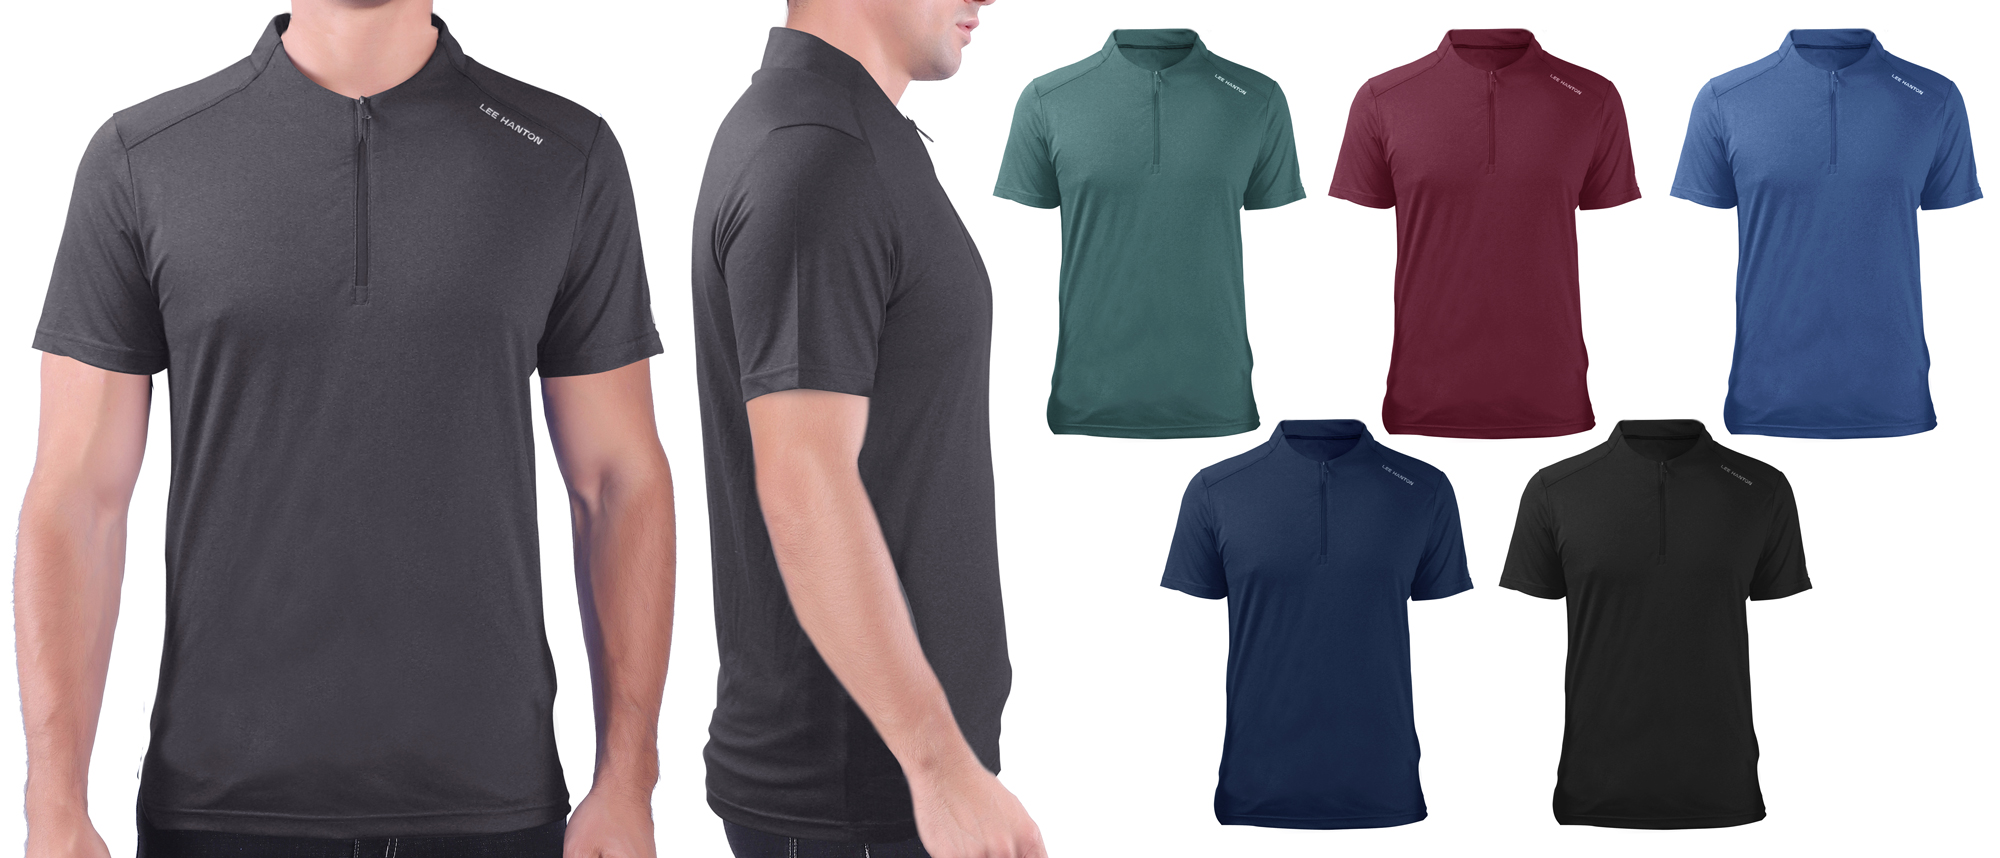 Men's Quarter Zip Sport Polo T-SHIRTs - Choose Your Color(s)